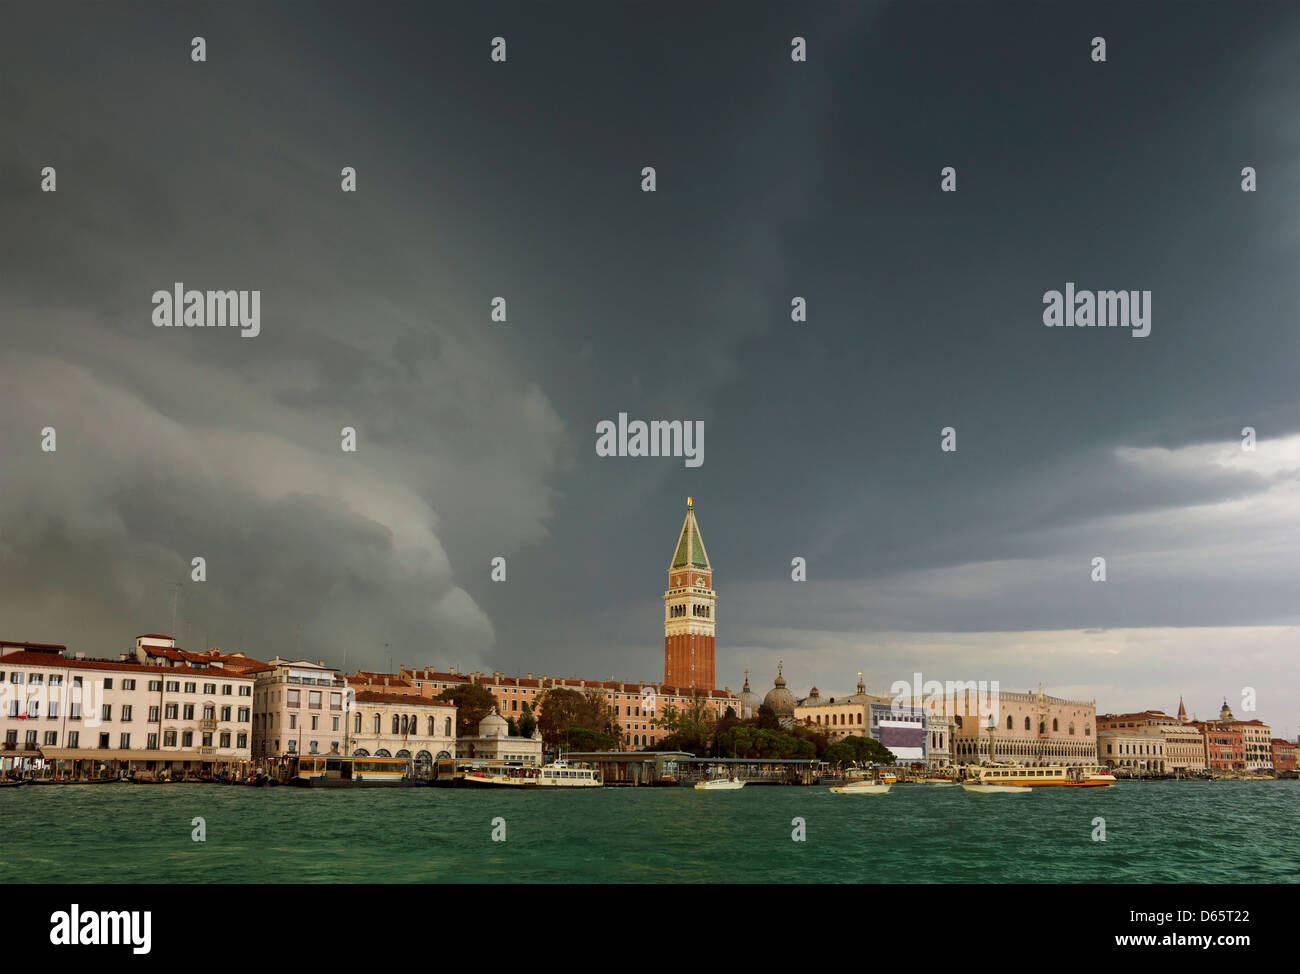 Une énorme tempête s'approche de la Place Saint Marc à Venise, Italie. Les nuages sombres et les vents forts en surplomb sur Grand Canal. Banque D'Images